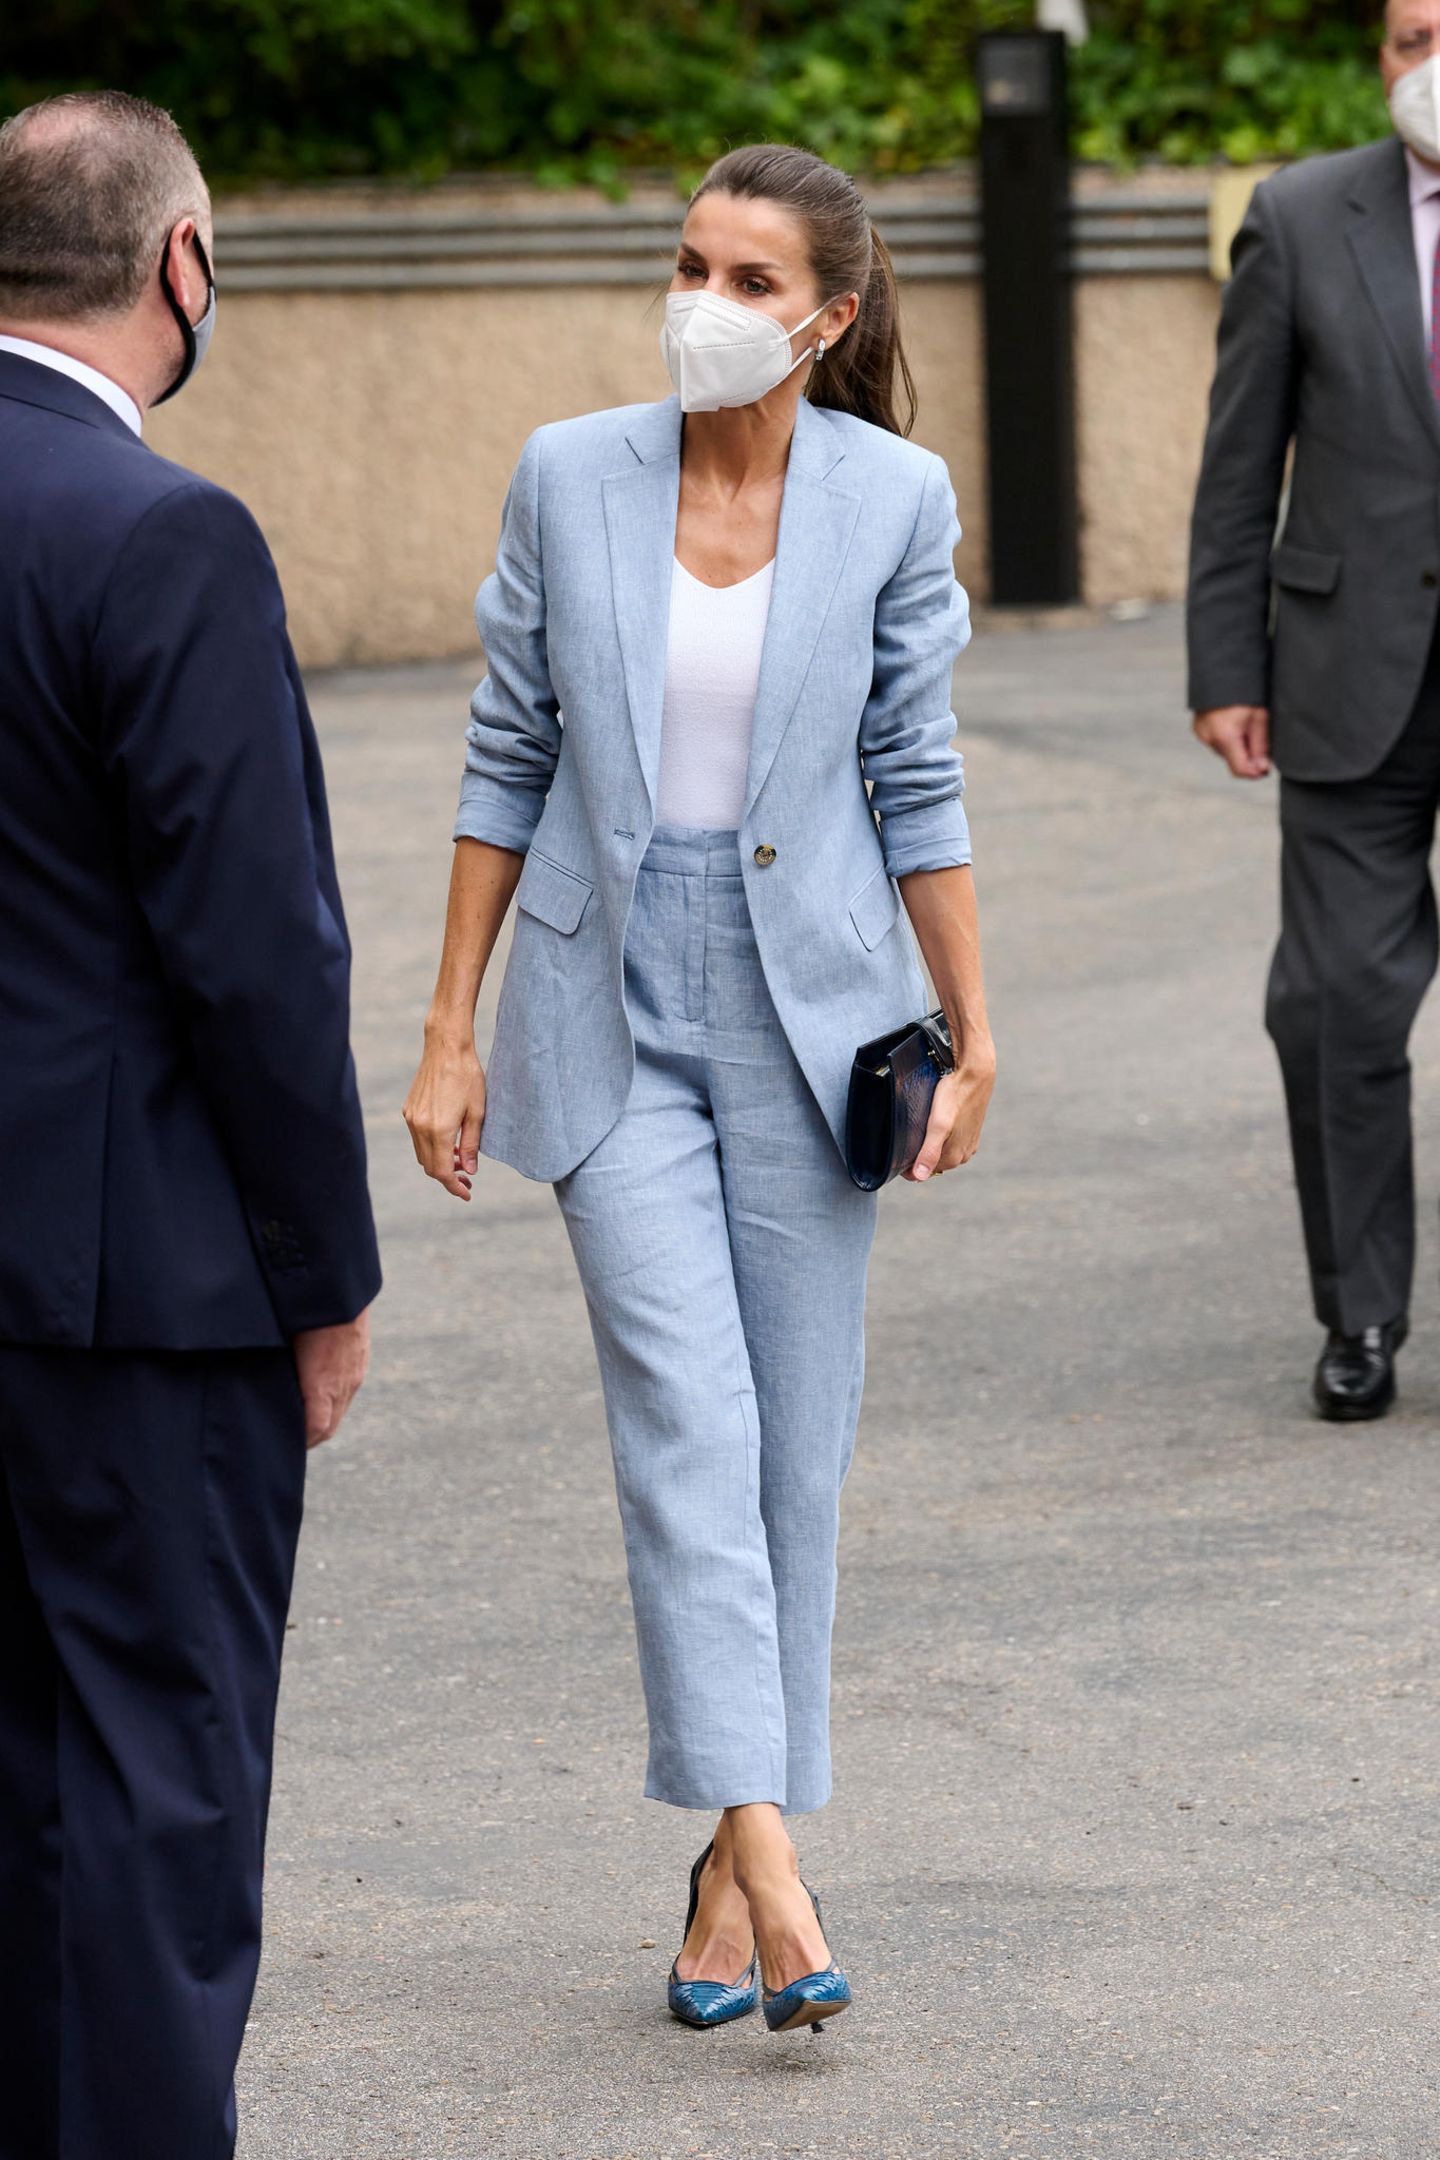 Zu einem Meeting mit den Organisationen Abertis Foundation und UNICEF Spain erscheint Königin Letizia im angesagten Zweiteiler der spanischen Modemarke Adolfo Dominguez. Immer im Fokus ihrer Looks: Letizias stylische Schuhwahl. Diesmal entscheidet sich die Königin für blaue Pumps in Lederoptik, die perfekt auf ihre Clutch abgestimmt sind. So beweist sie, dass nicht nur schöne Kleider, sondern auch ein schicker Business-Look ihr hervorragend stehen!